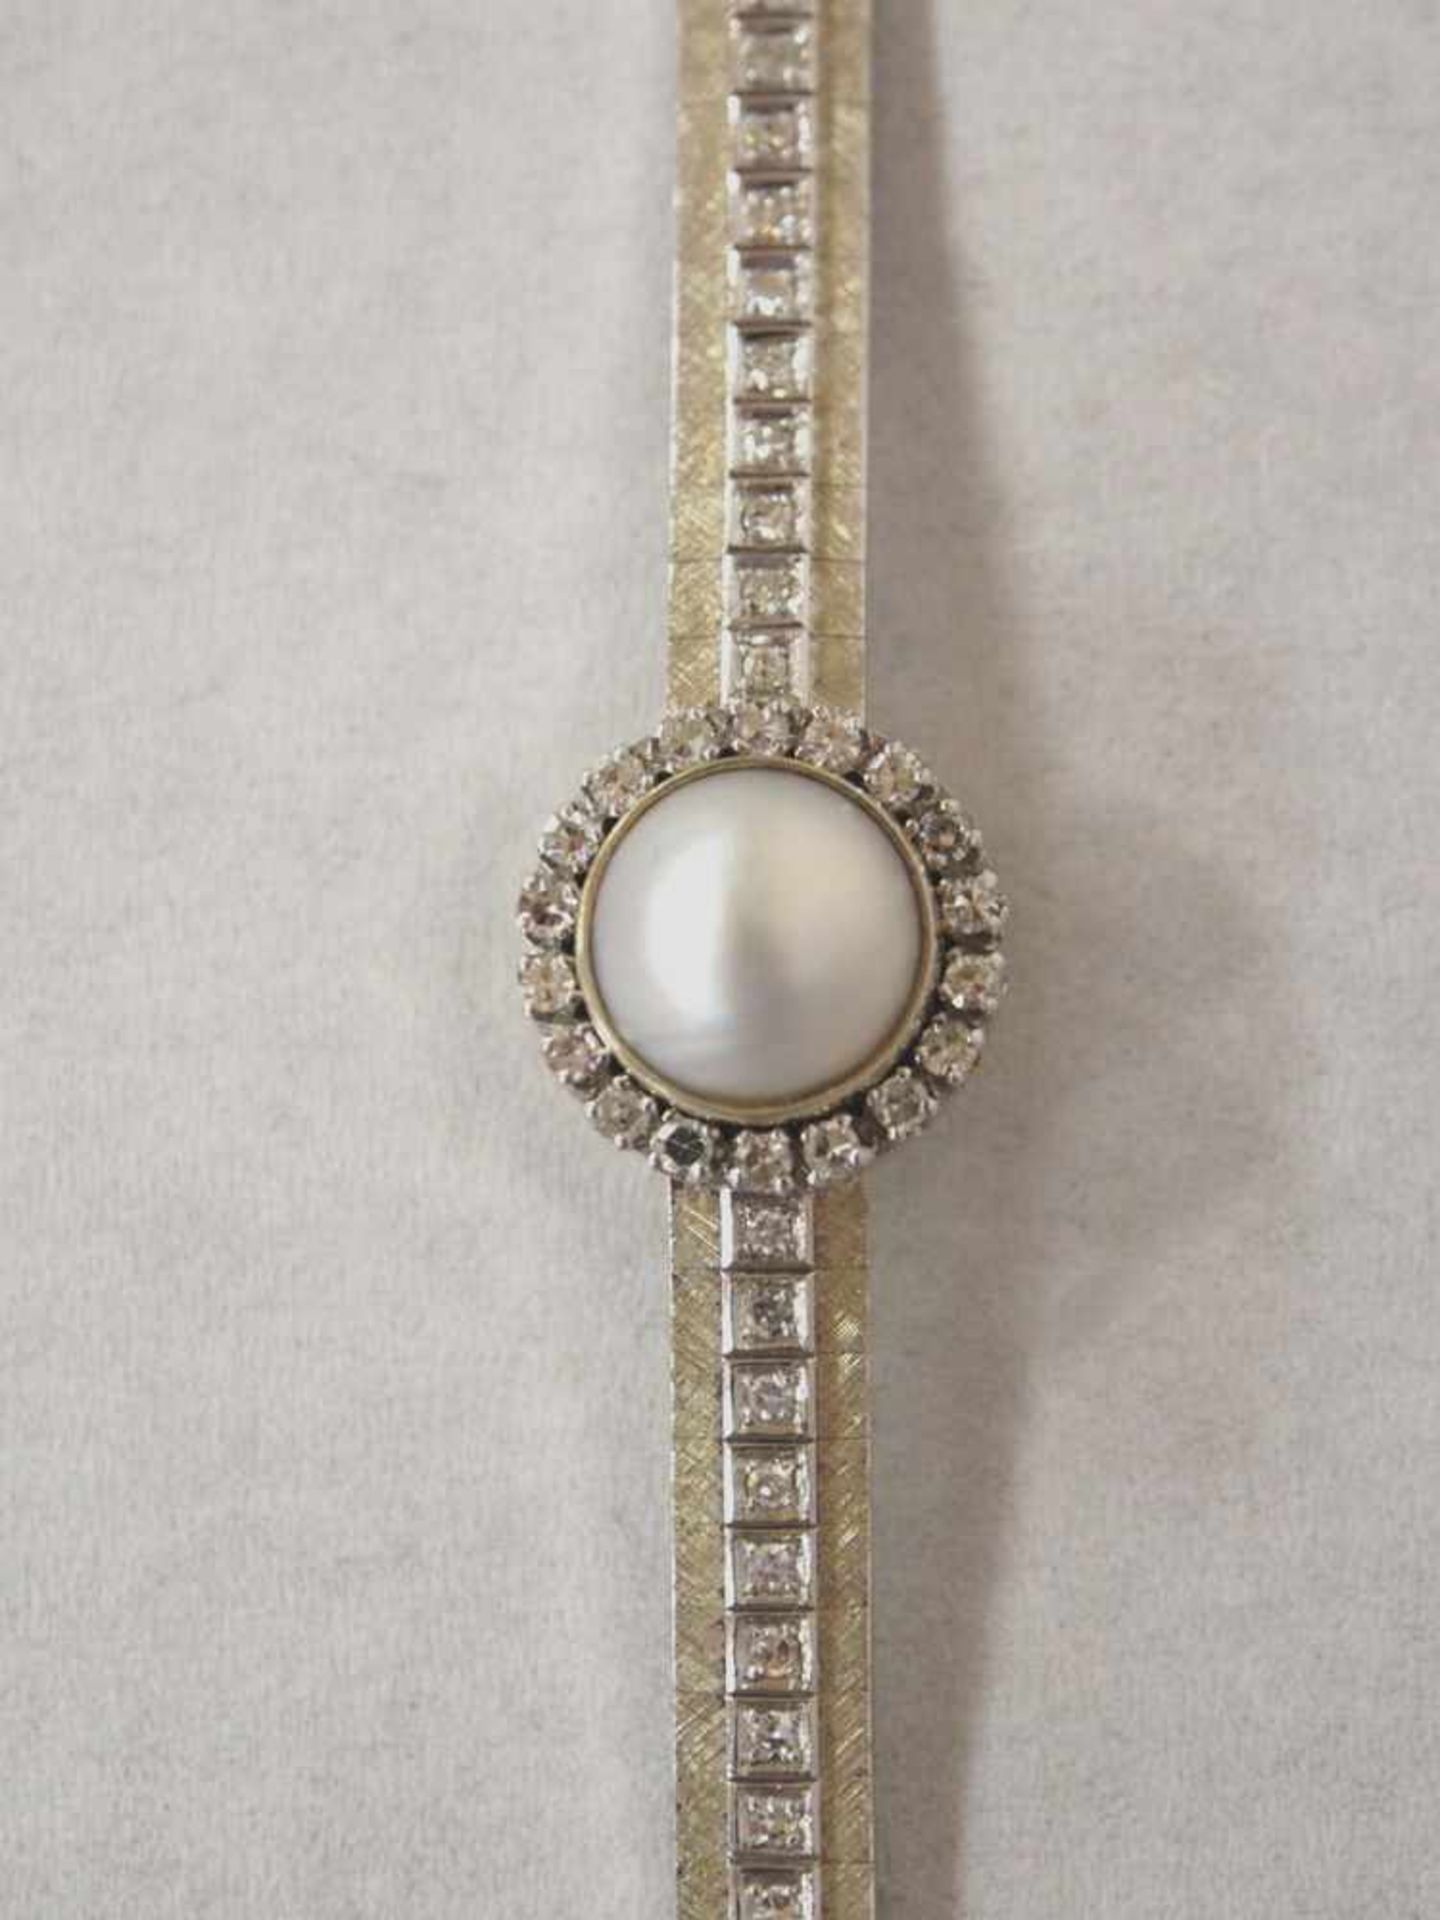 Armband750er Weissgold, Perle, umgeben von Brillanten, Band mit Brillantbesatz, Durchmesser 5,5